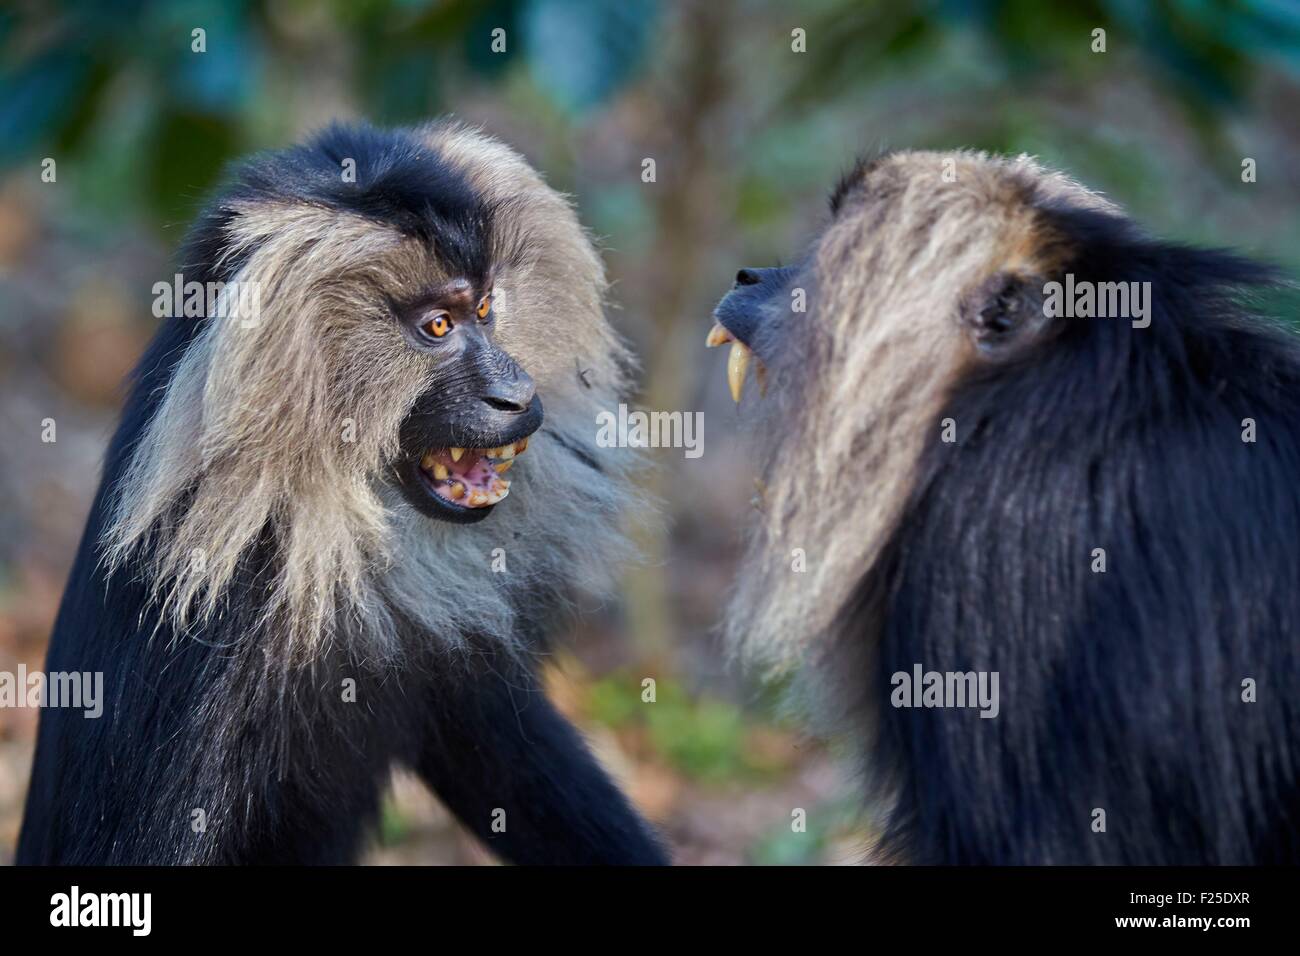 L'Inde, l'Etat du Tamil Nadu, Anaimalai de montagnes (Nilgiri Hills), Lion-tailed macaque (Macaca silène), ou le Wanderoo, le macaque à queue de lion se classe parmi les plus rares et les plus menacés, les primates mâles adultes dominants, posture agressive Banque D'Images